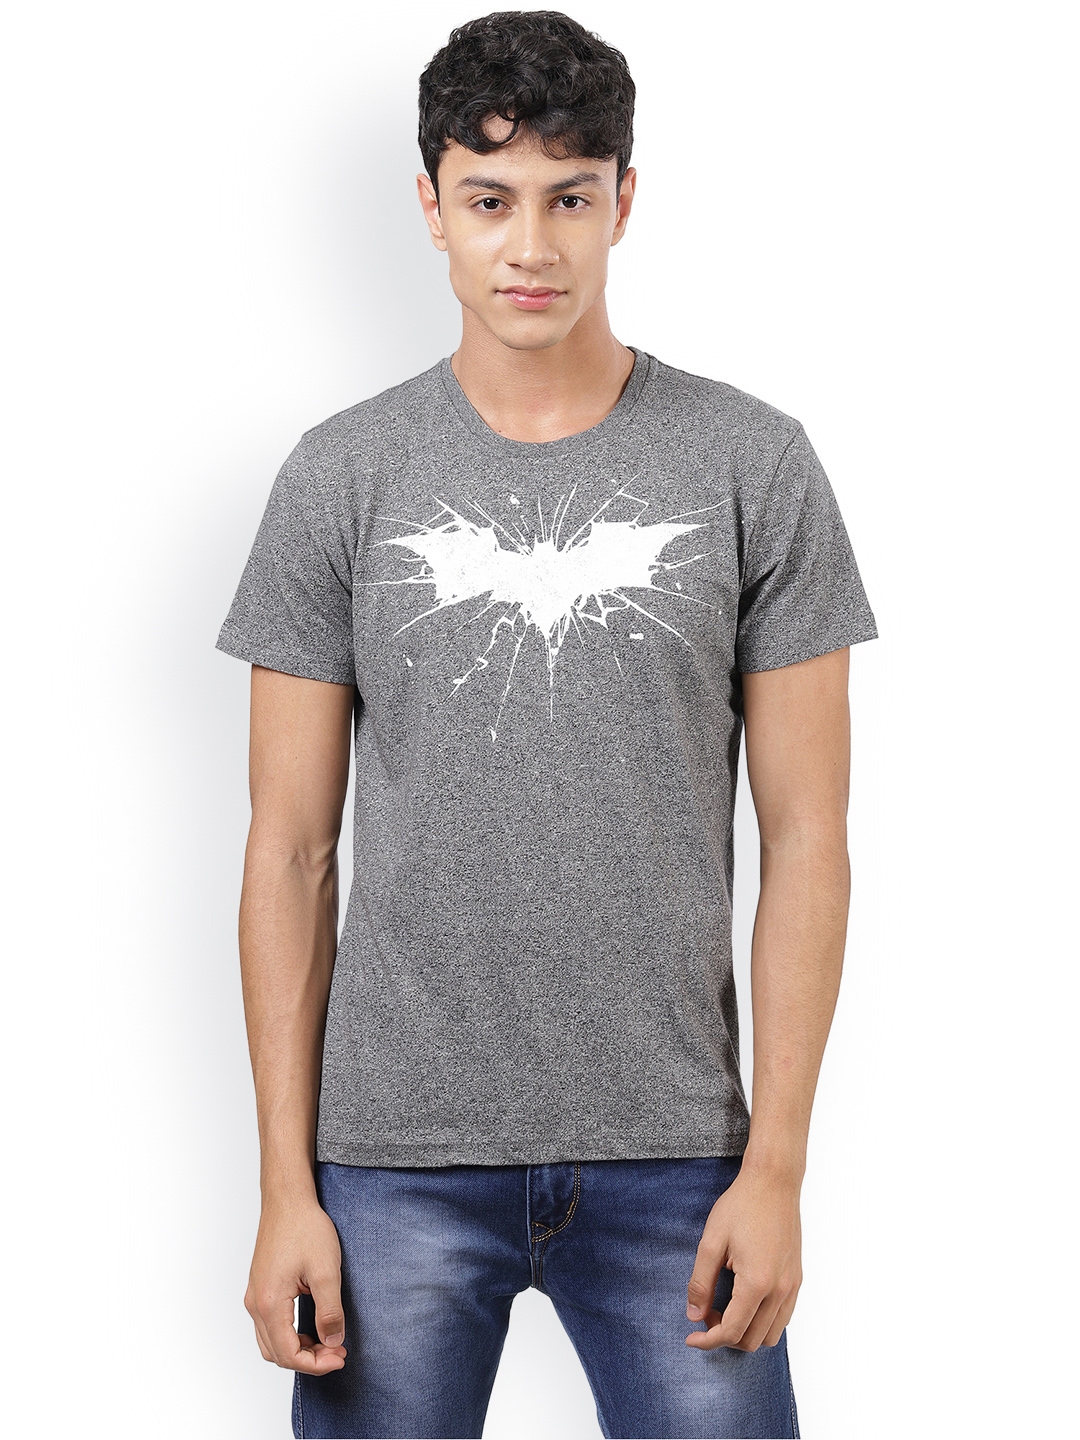 Buy Batman Featured Grey Tshirt For Men - Tshirts for Men 6544385 | Myntra